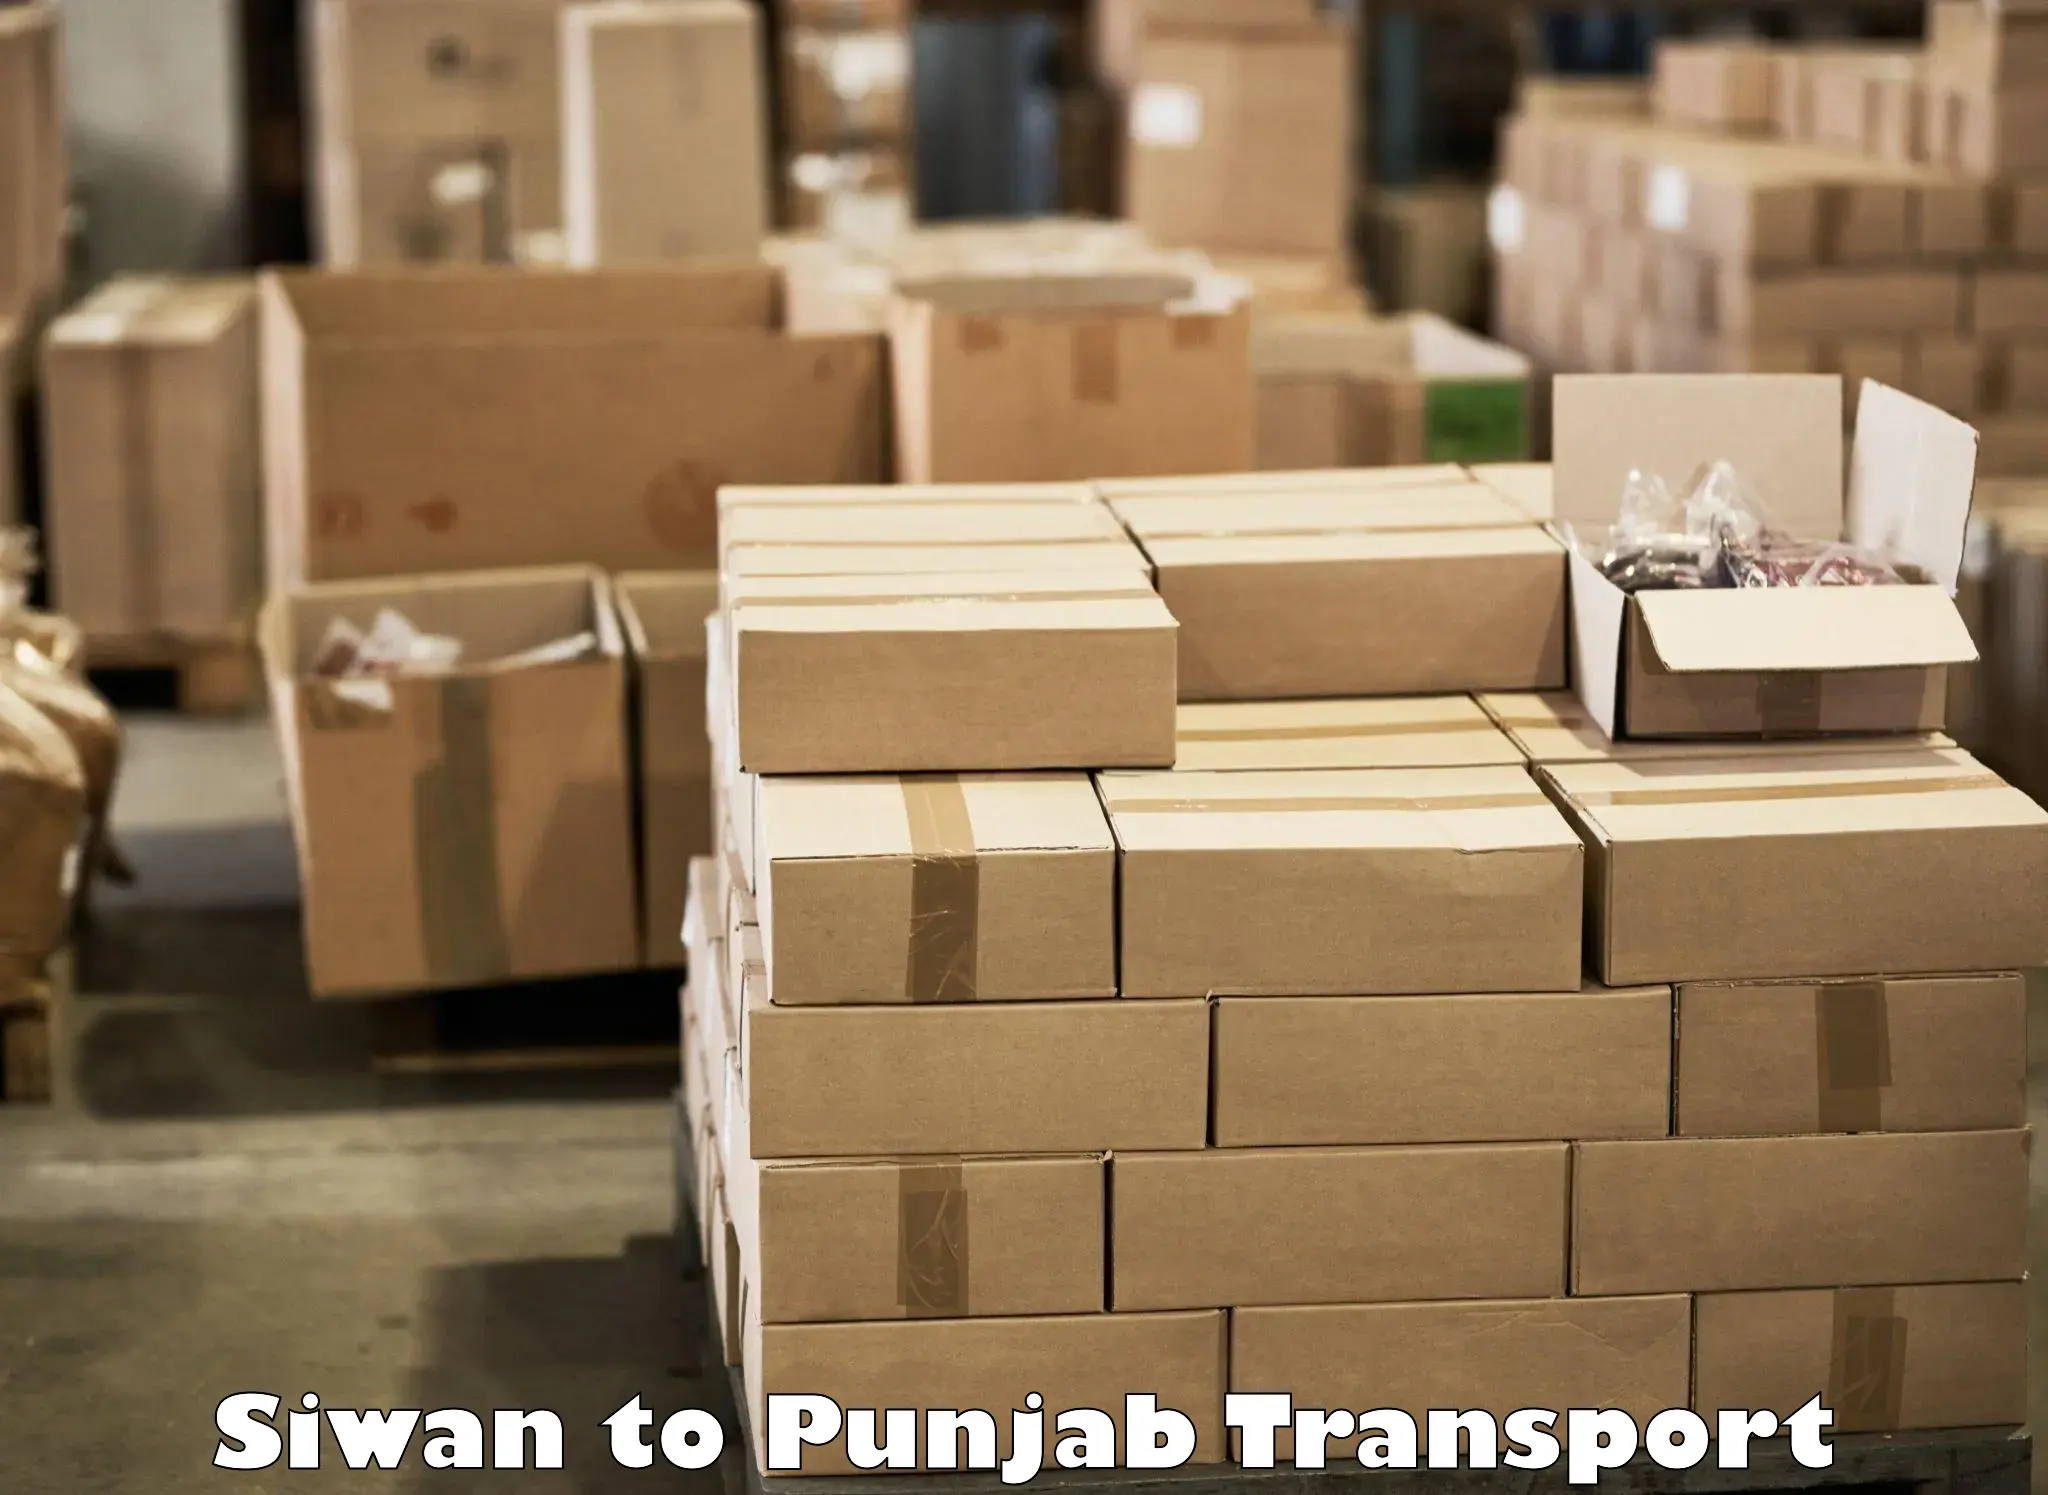 Interstate transport services Siwan to Punjab